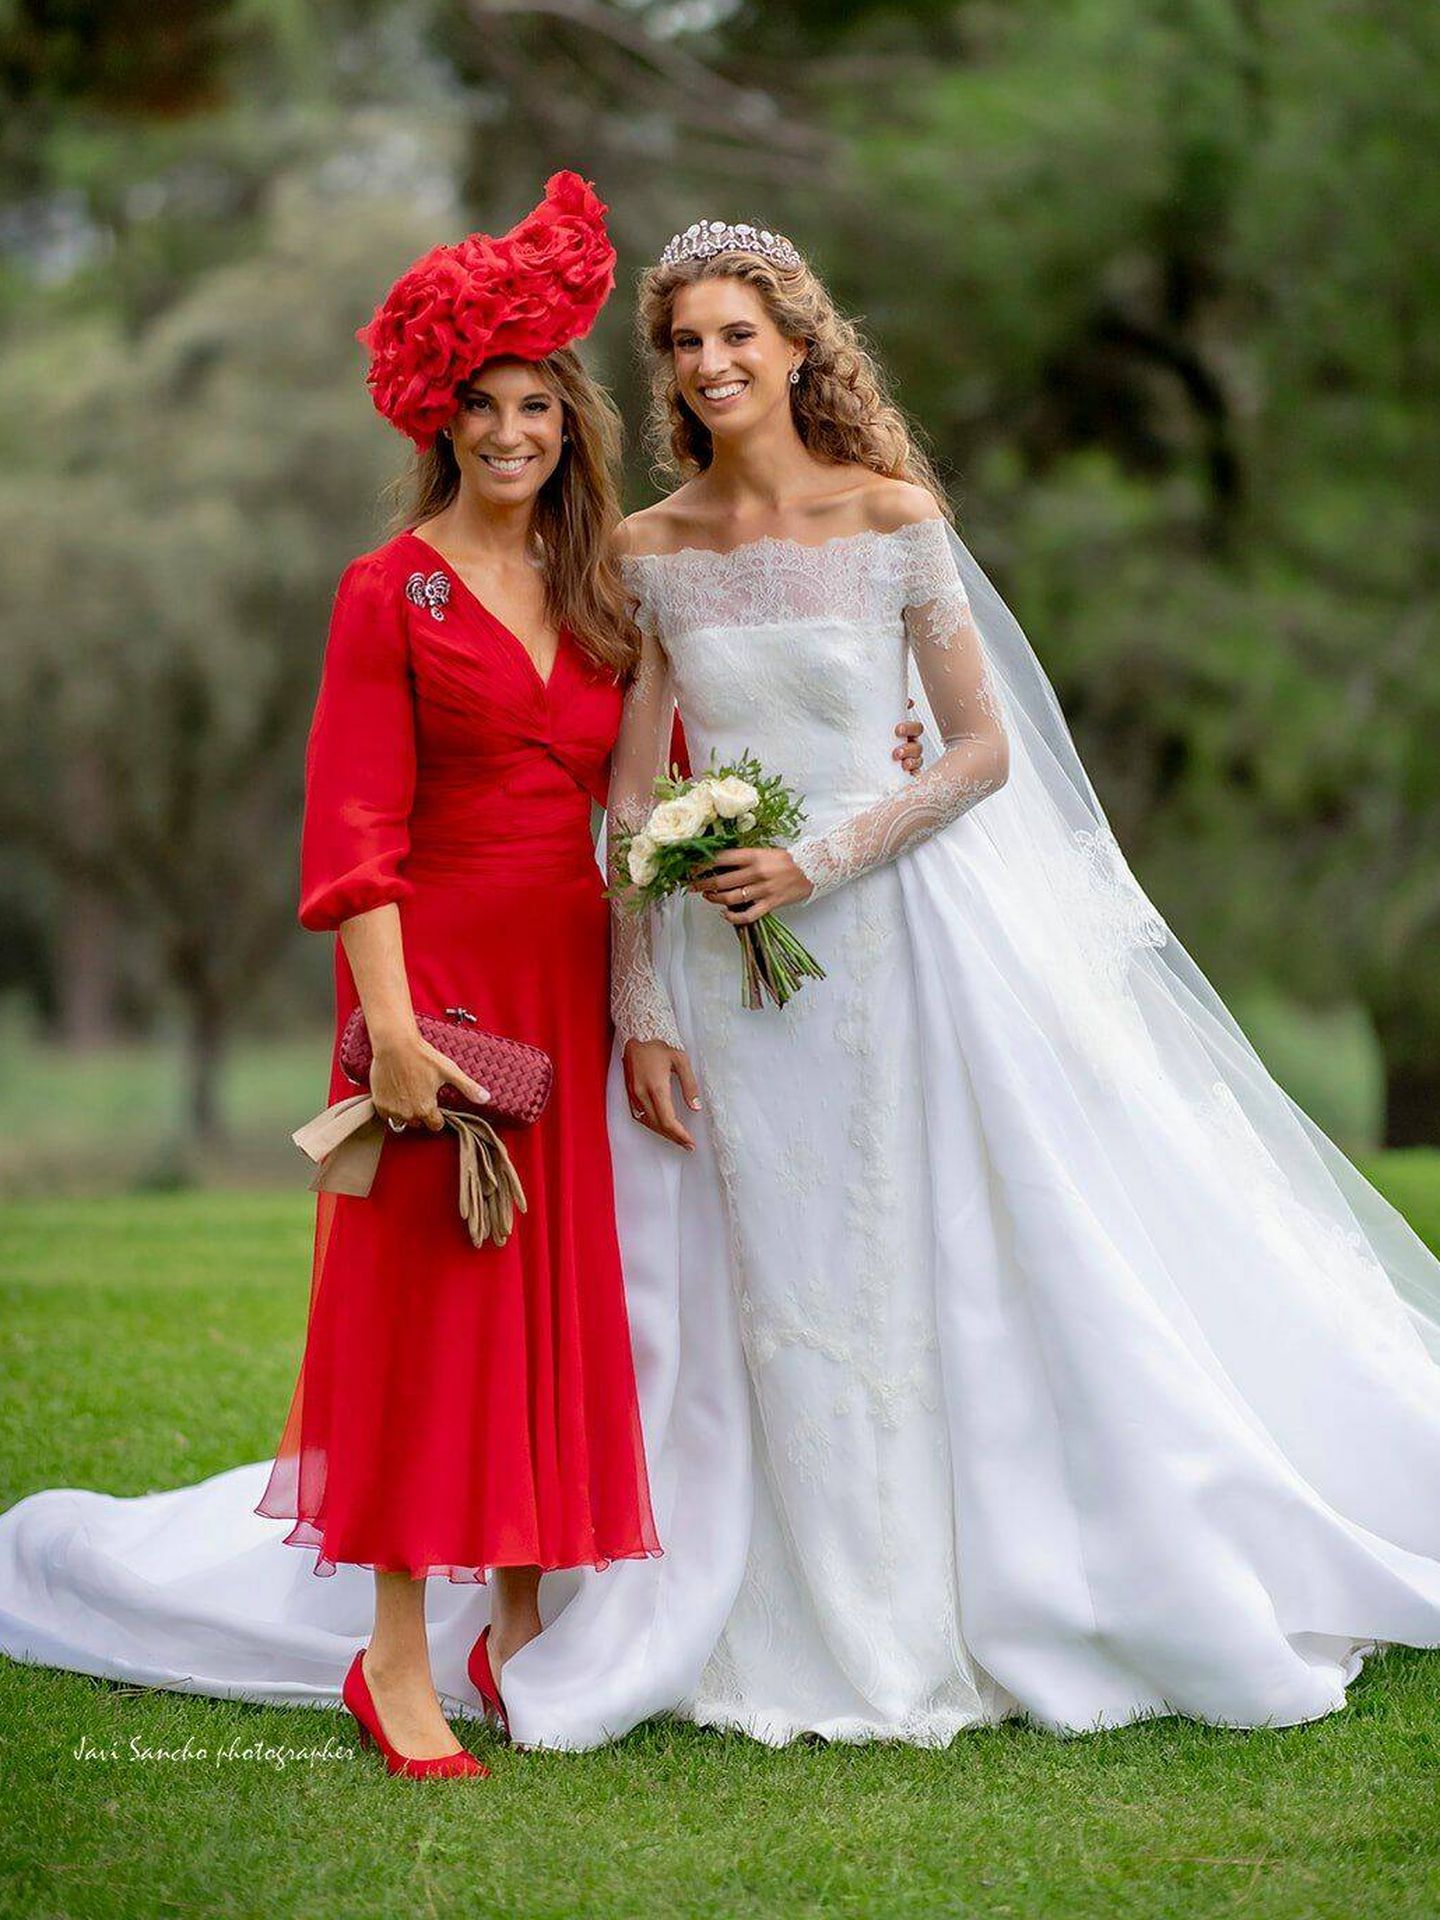 Olimpia Cotoner, de rojo en la boda de su hija Tatiana. (Cortesía/Javi Sáncho) 